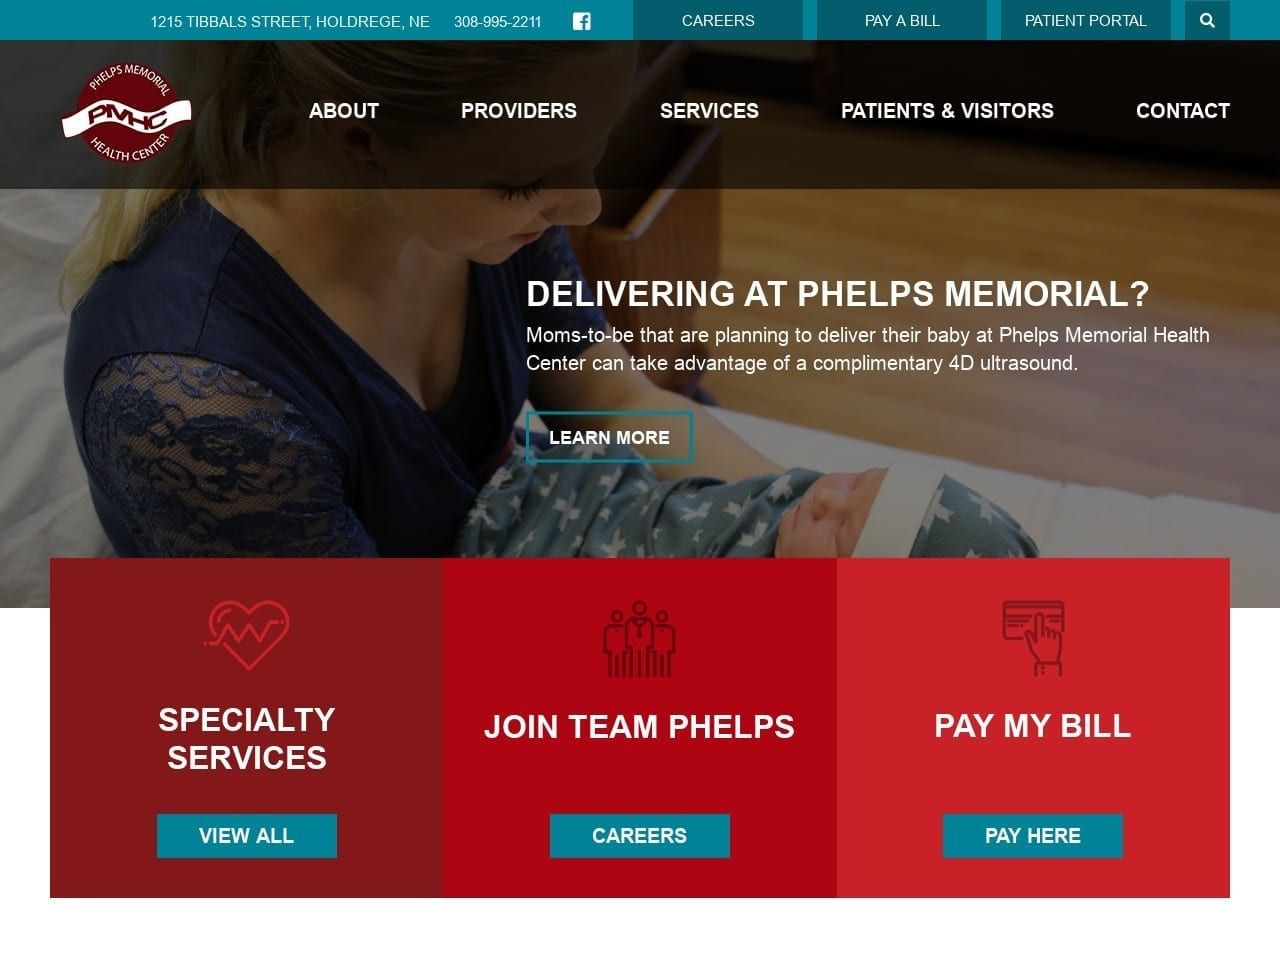 Phelps Memorial Health Center Website Screenshot from phelpsmemorial.com